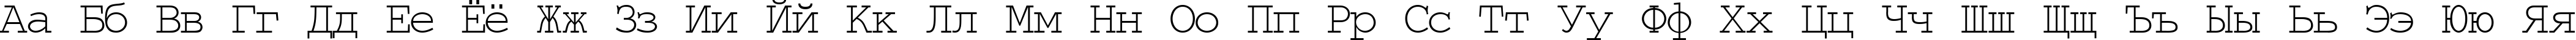 Пример написания русского алфавита шрифтом TypeWriter Normal